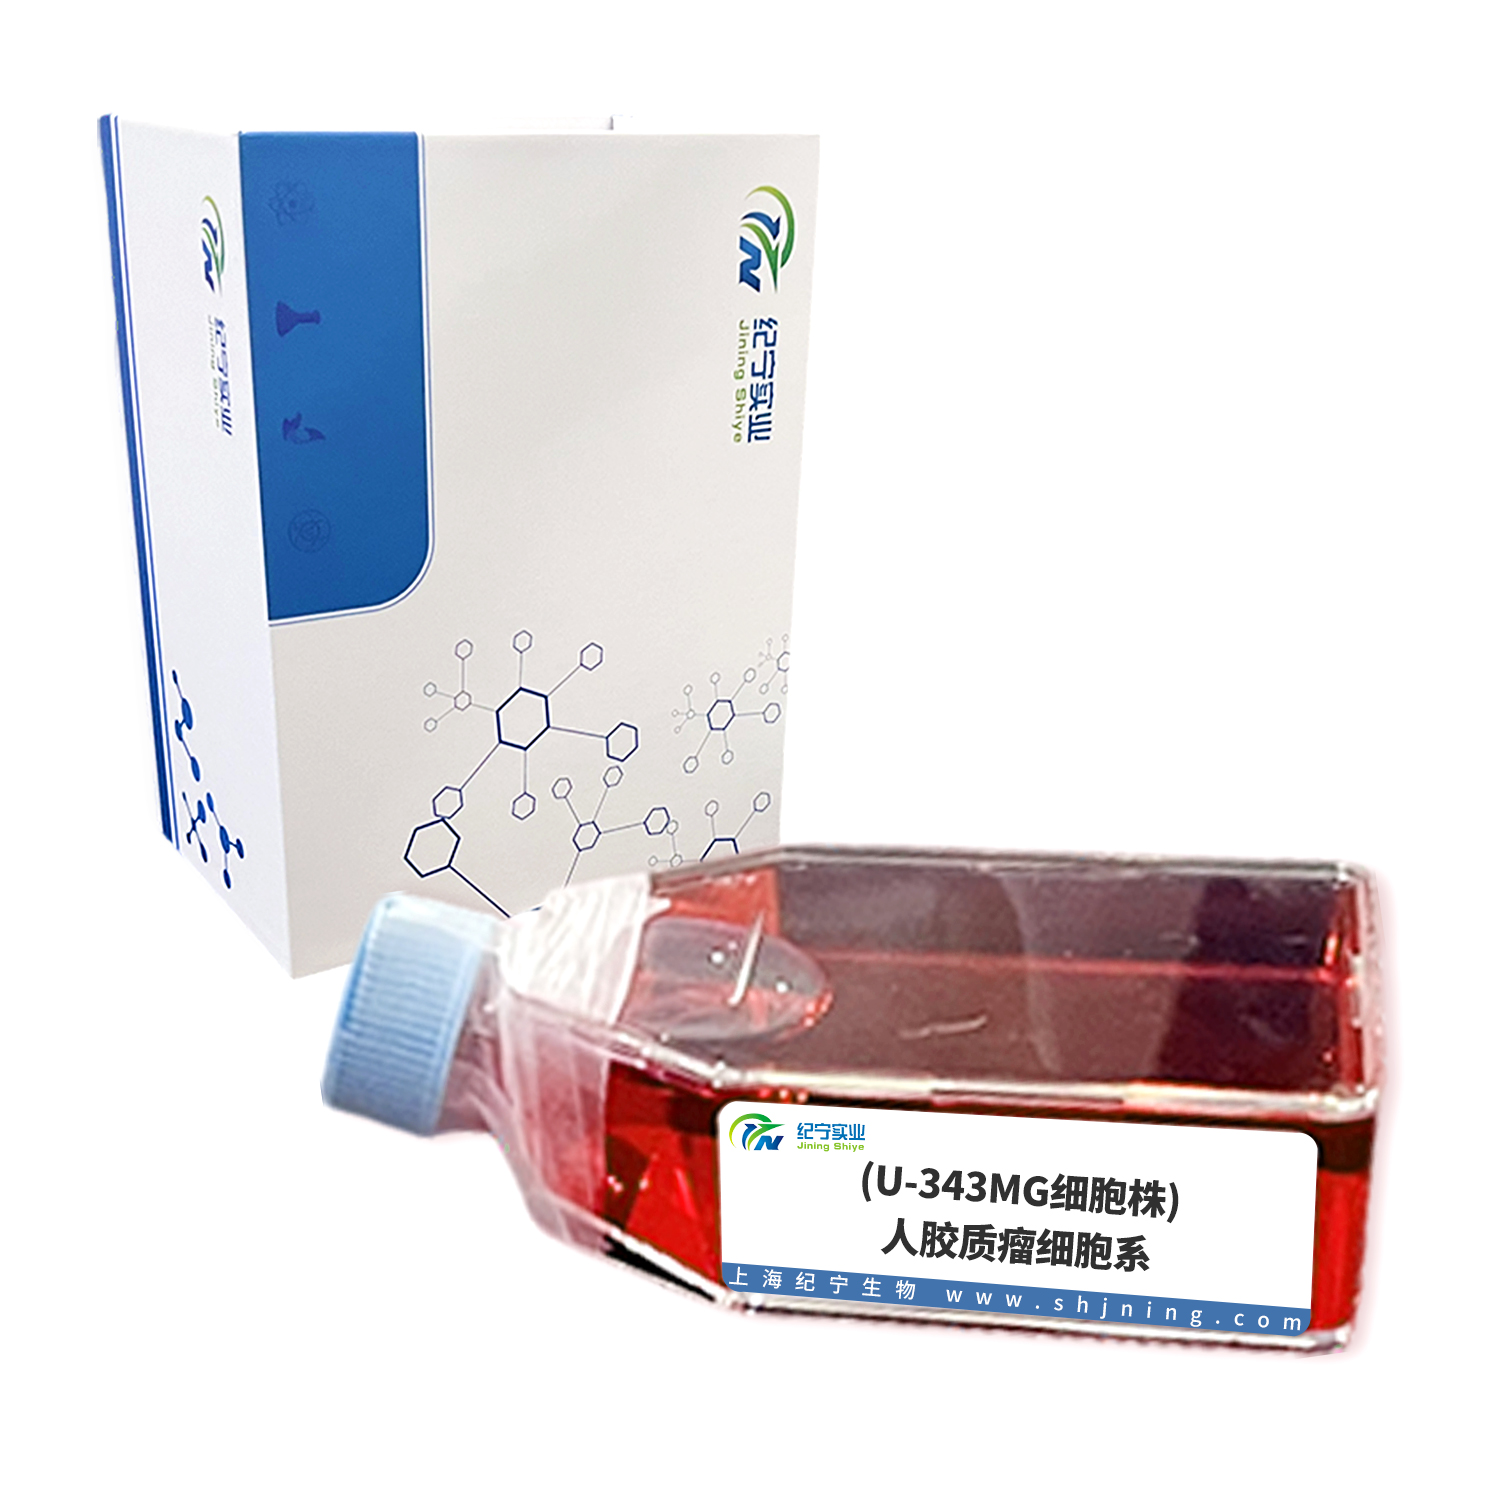 (U-343MG细胞株)人胶质瘤细胞系